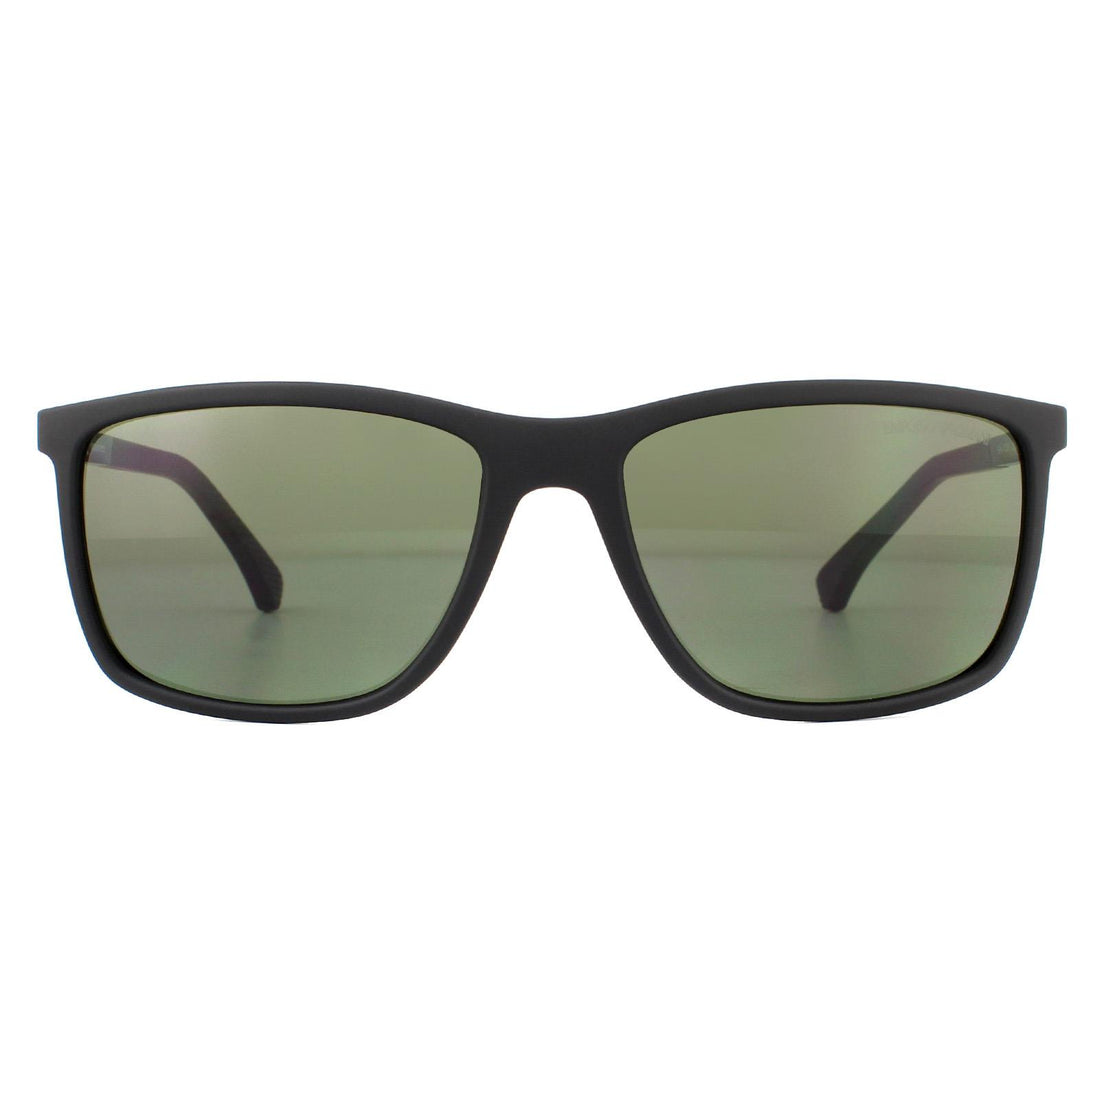 Emporio Armani EA4058 Sunglasses Rubber Black / Green Polarized